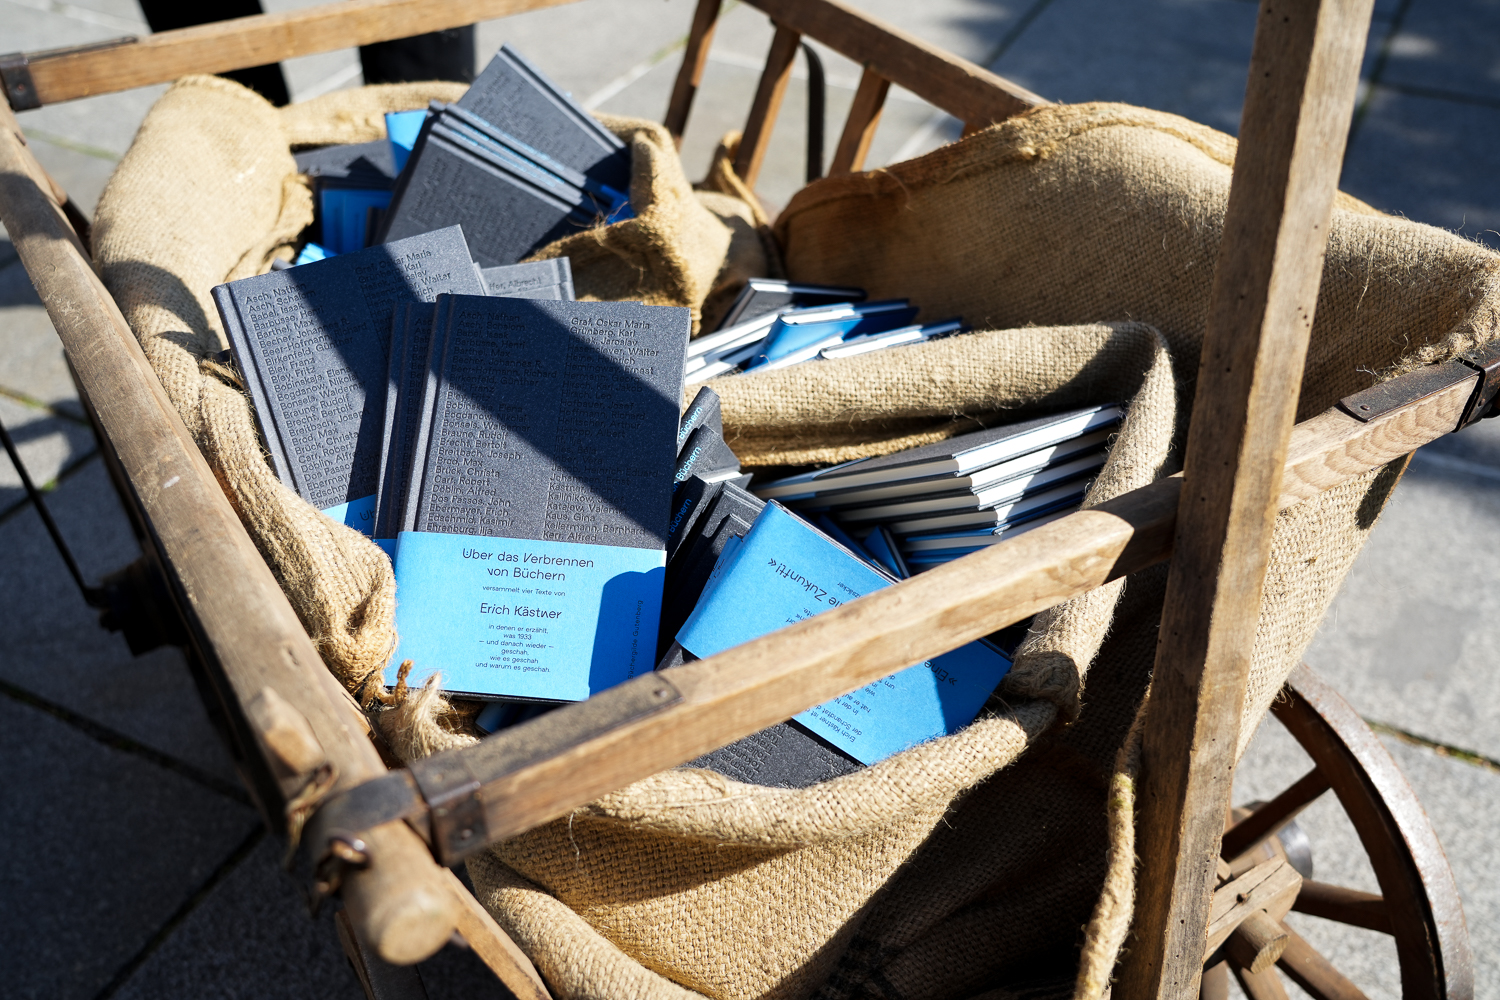 Ein Holzkarren voller Bücher, die auf Sackleinen liegen. Im Vordergrund ist Erich Kästners "Über das Verbrennen von Büchern" zu sehen.